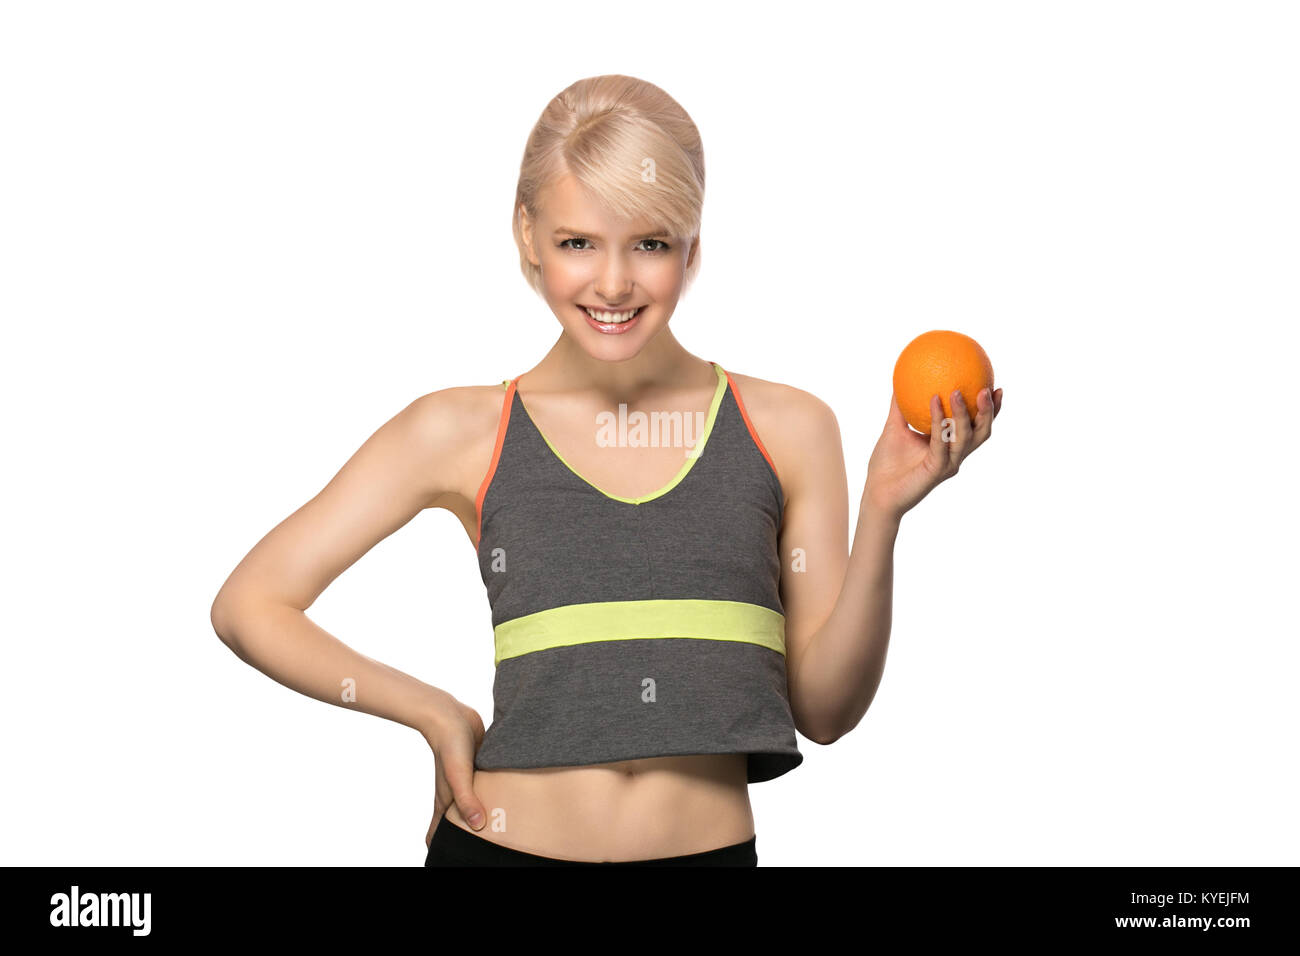 Glücklich lächelnde schlanke Frau mit Orange, Studio Portrait auf weißem Hintergrund, gesunden Lebensstil Konzept Stockfoto